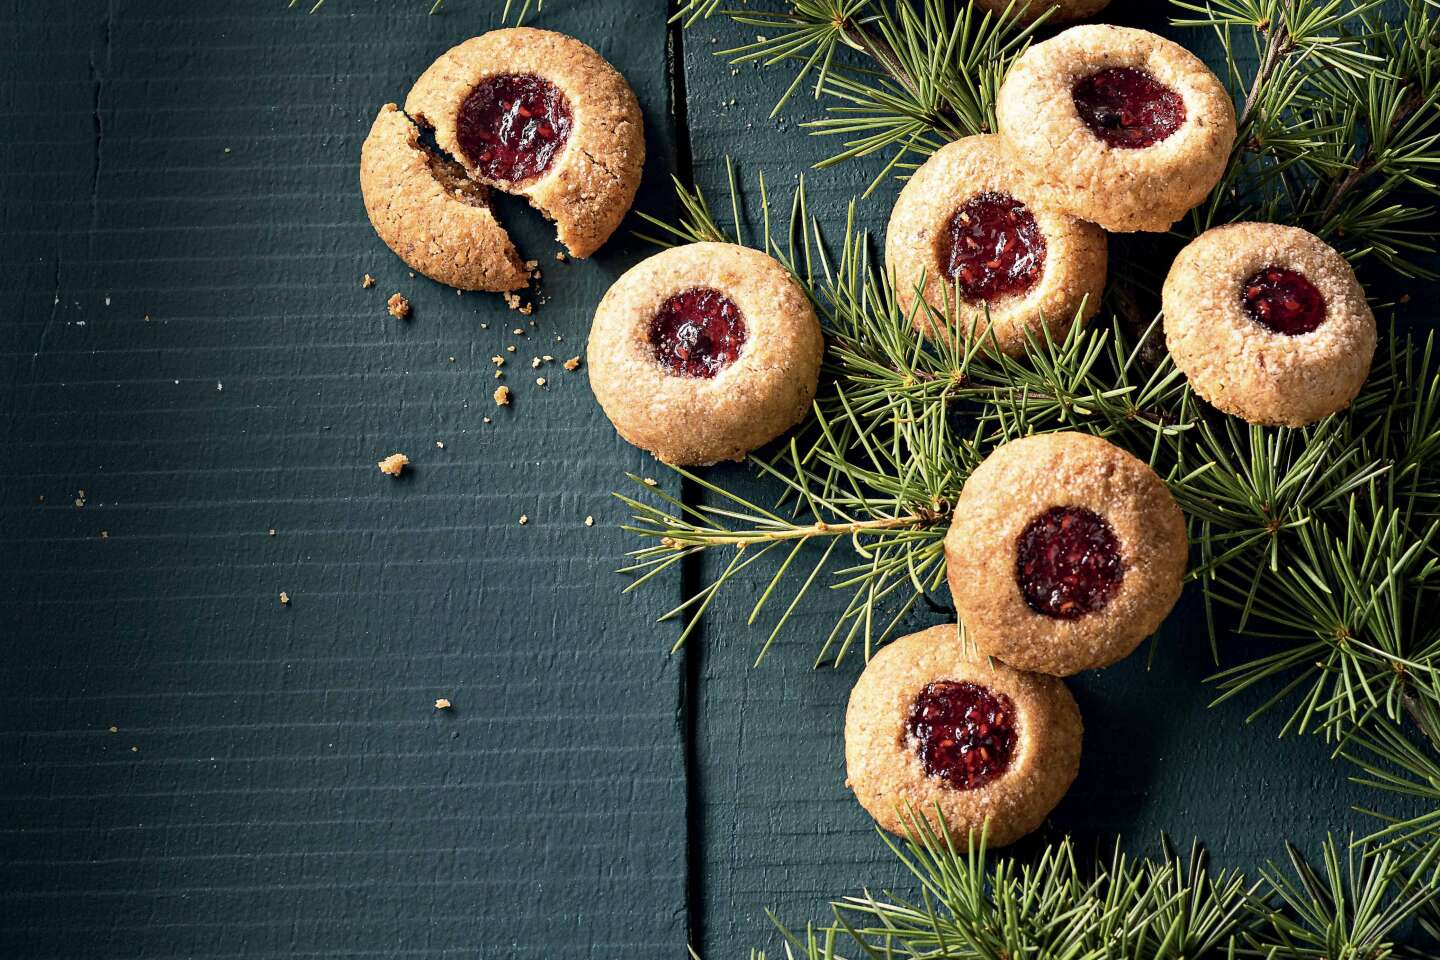 Streusel, biscuits, jus de fruits chaud : trois recettes sucrées pour bien préparer Noël